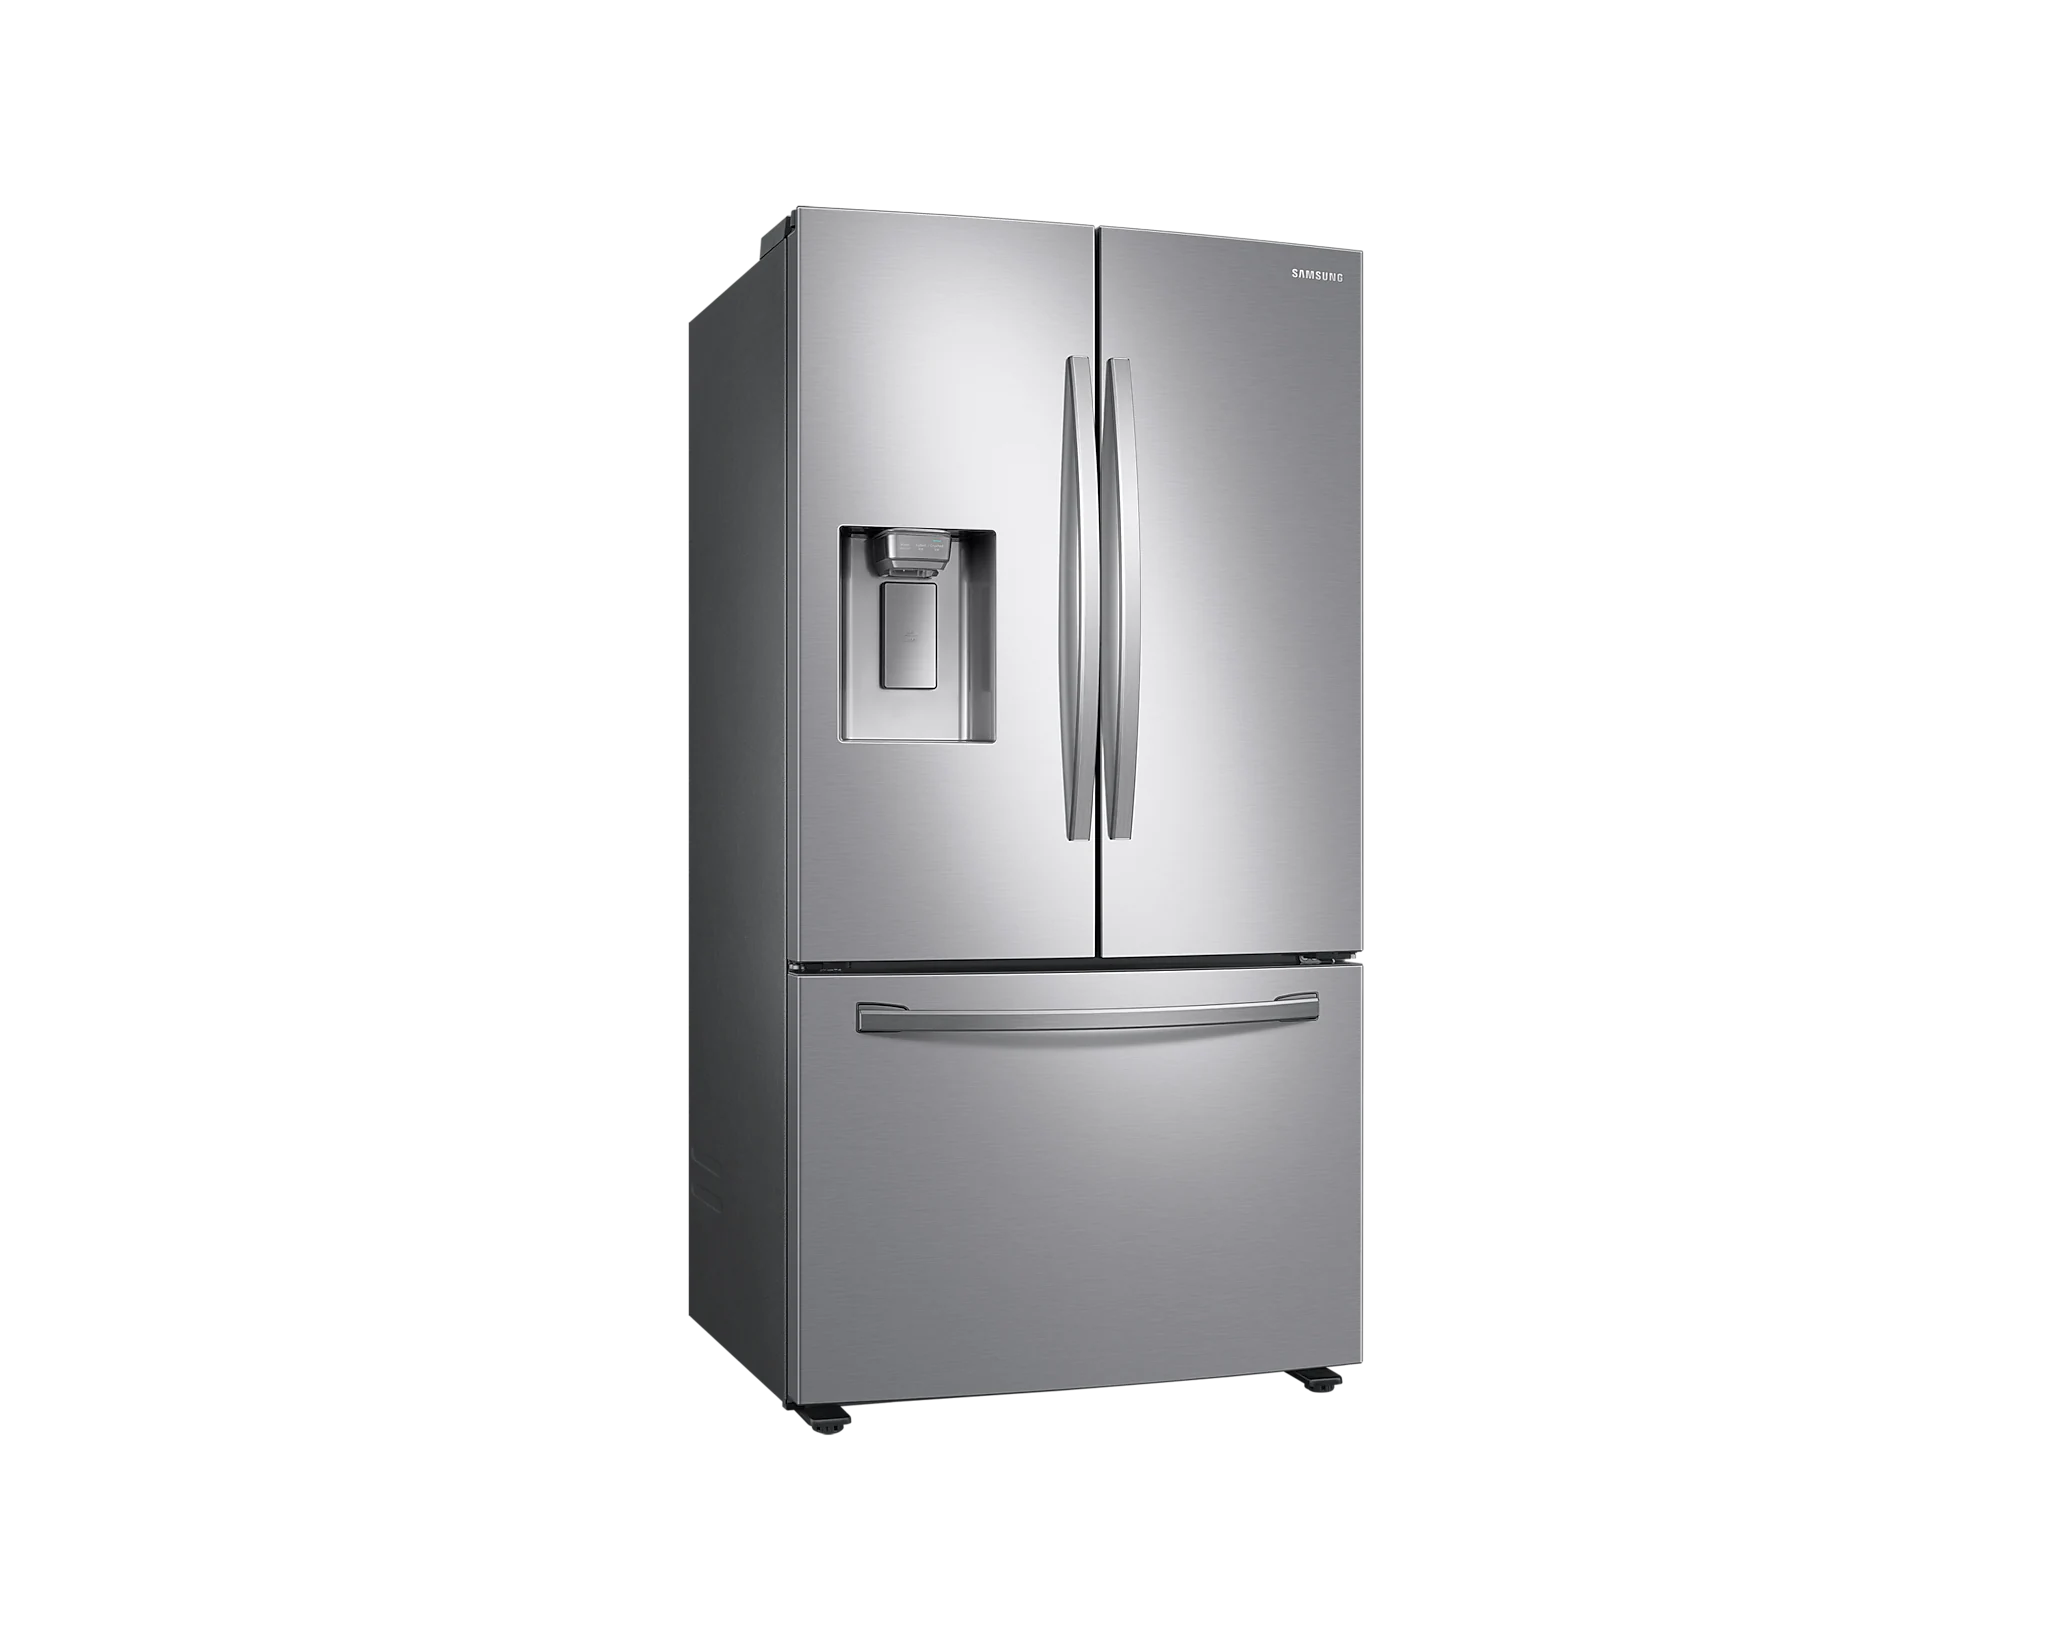 Réfrigérateur multiportes Samsung RF54T62E3S9 - Chardenon Équipe